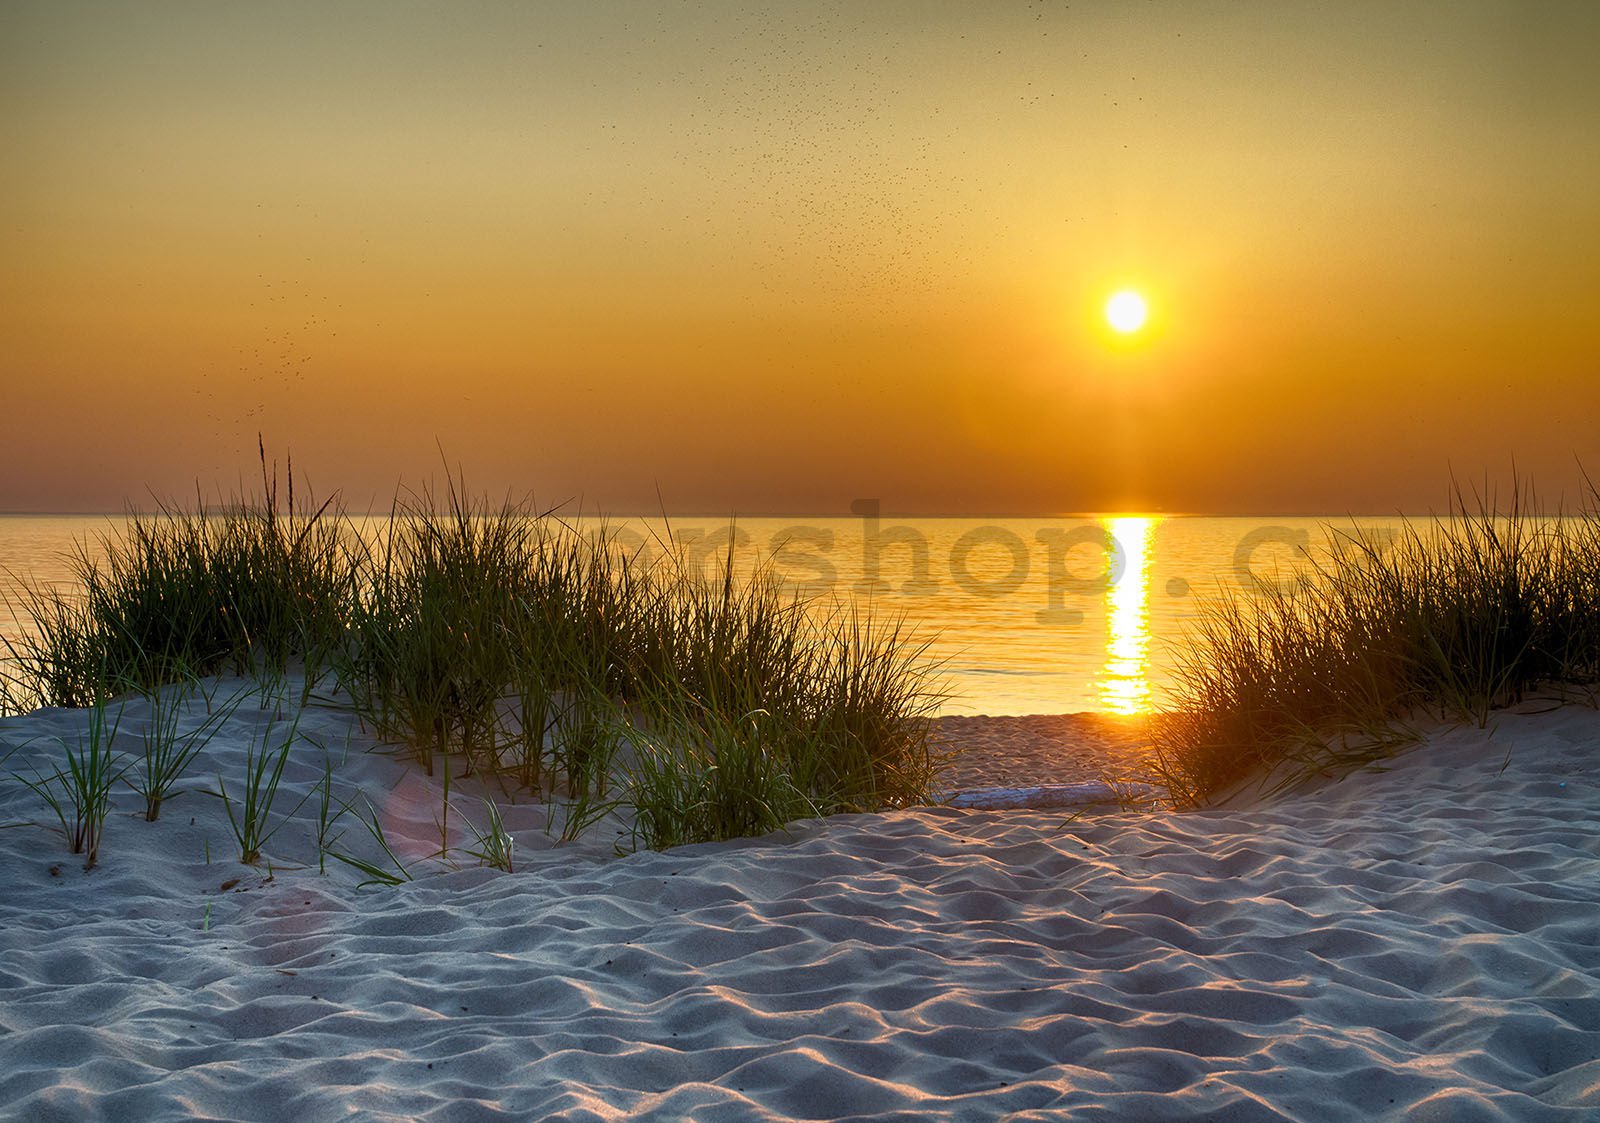 Fototapeta vliesová: Západ slunce na pláži (5) - 368x254 cm